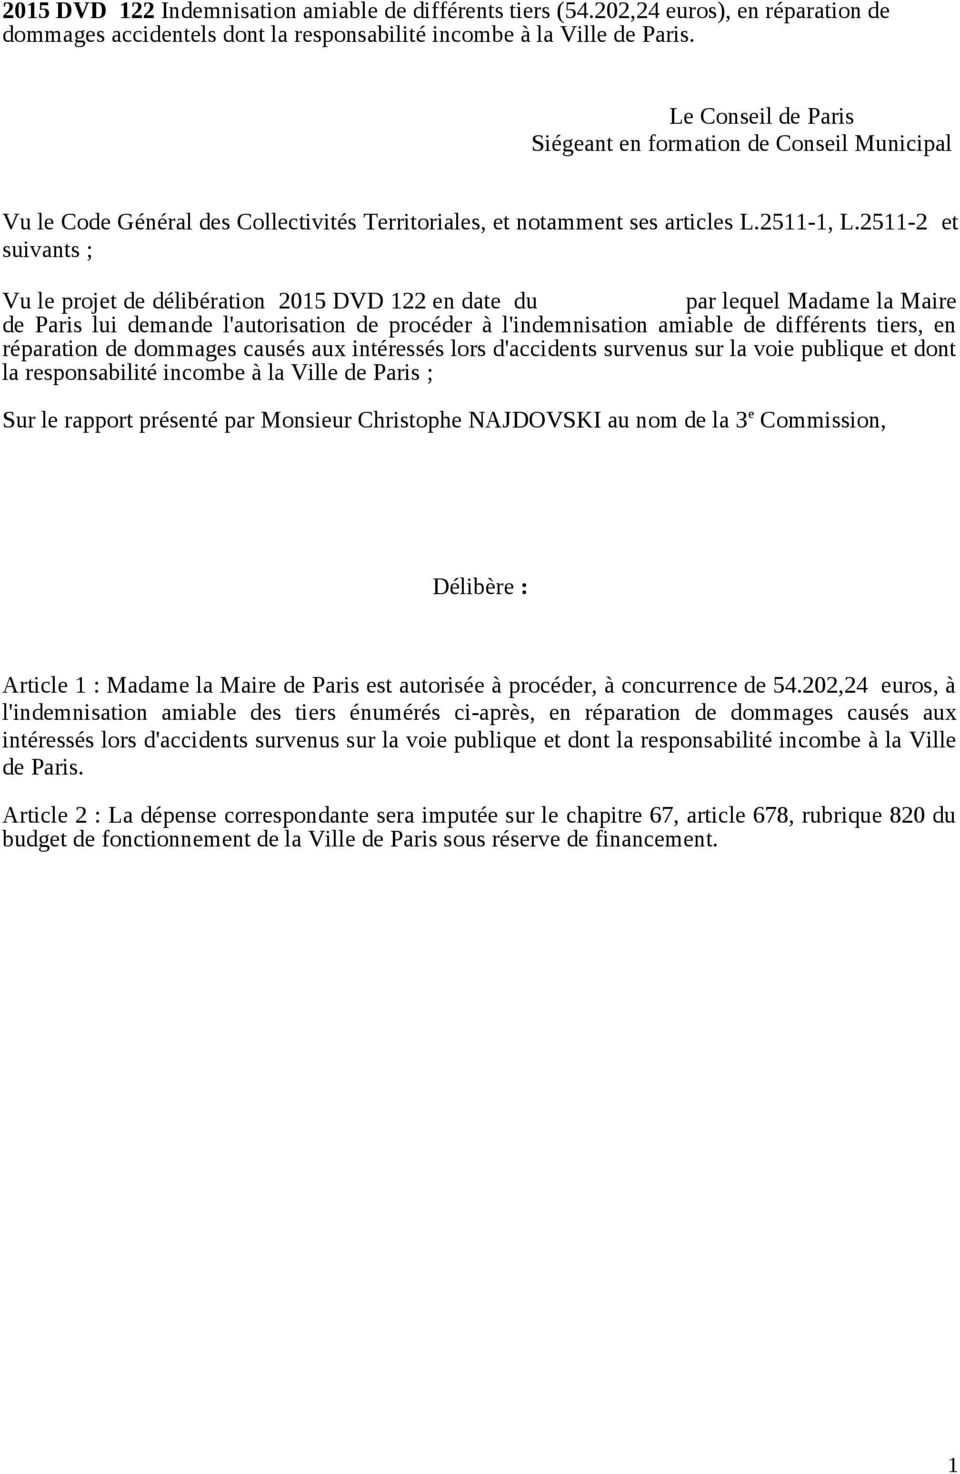 2511-2 et suivants ; Vu le projet de délibération 2015 DVD 122 en date du par lequel Madame la Maire de Paris lui demande l'autorisation de procéder à l'indemnisation amiable de différents tiers, en